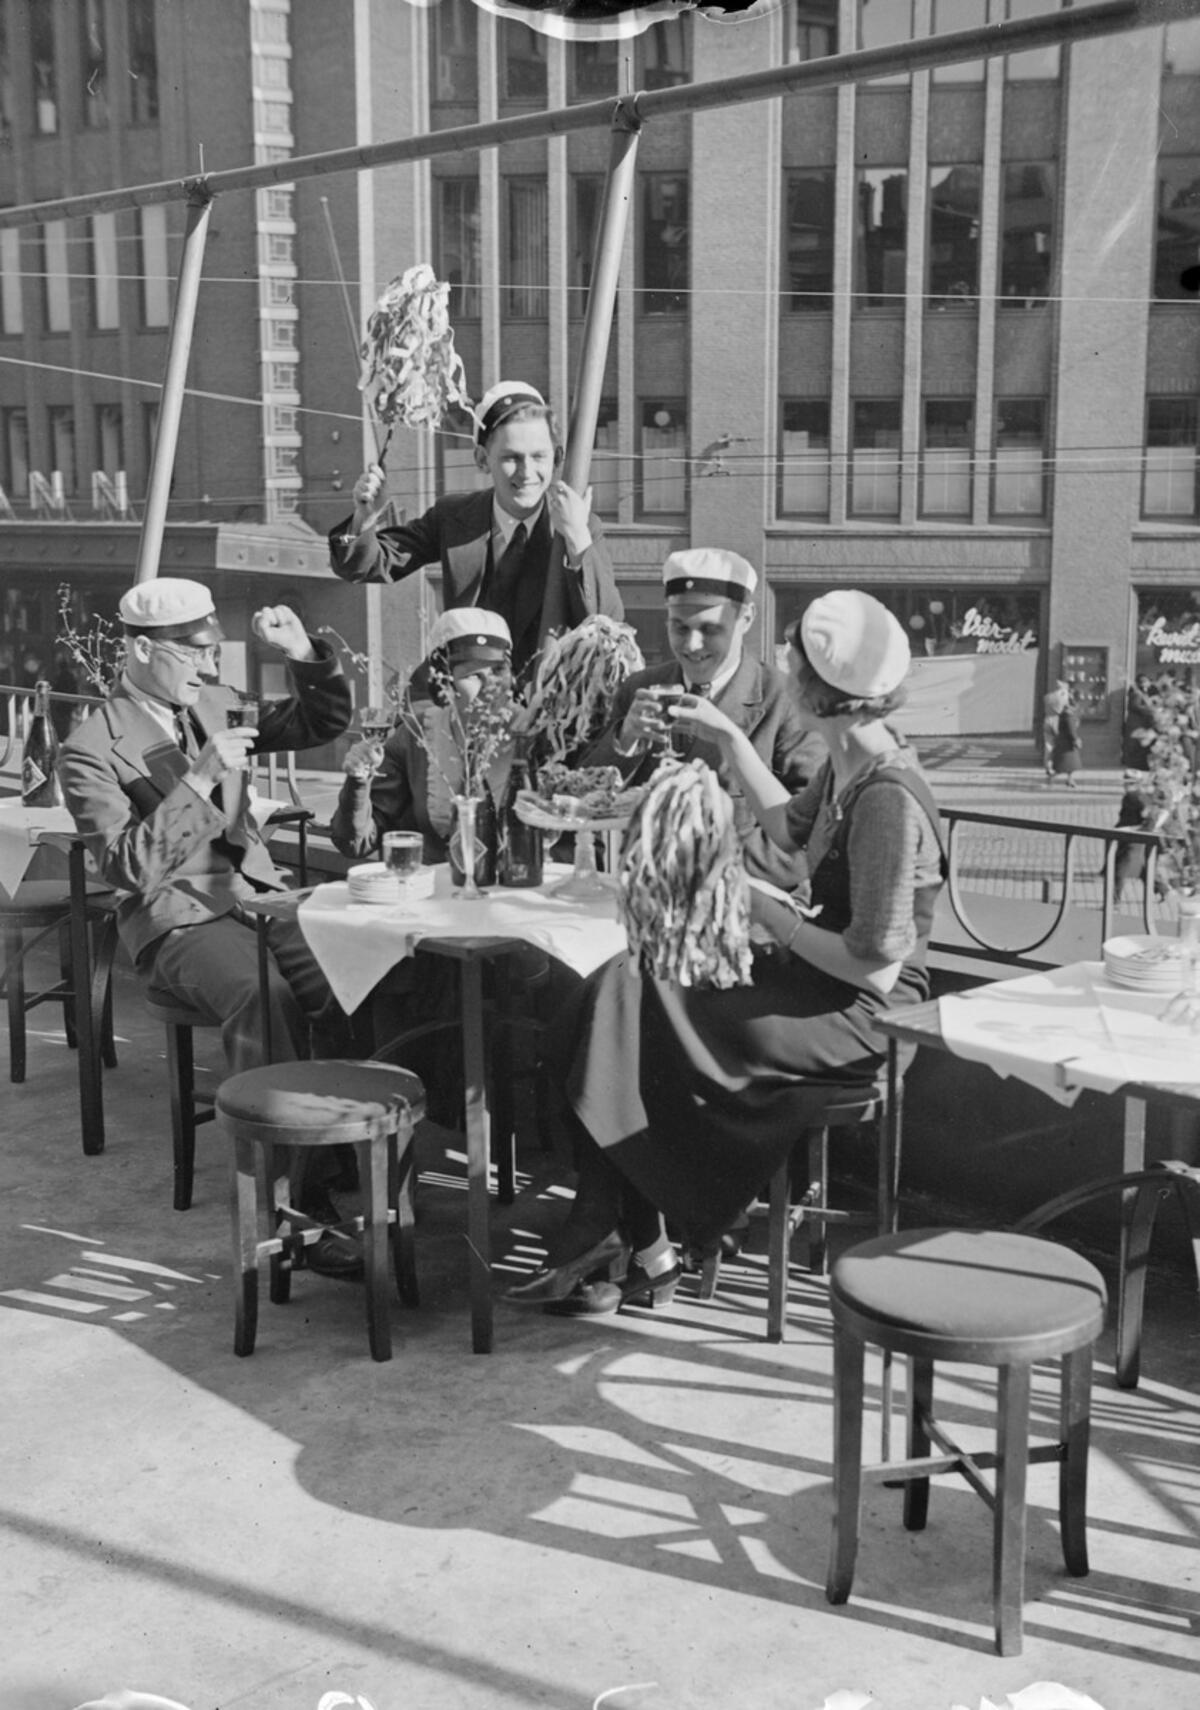 Restauranger och deras uteserveringar är en väsentlig del av urban valborg. Här firar studenter valborg på Gamla studenthusets uteservering 1933. Foto: Museiverket / Pietinen